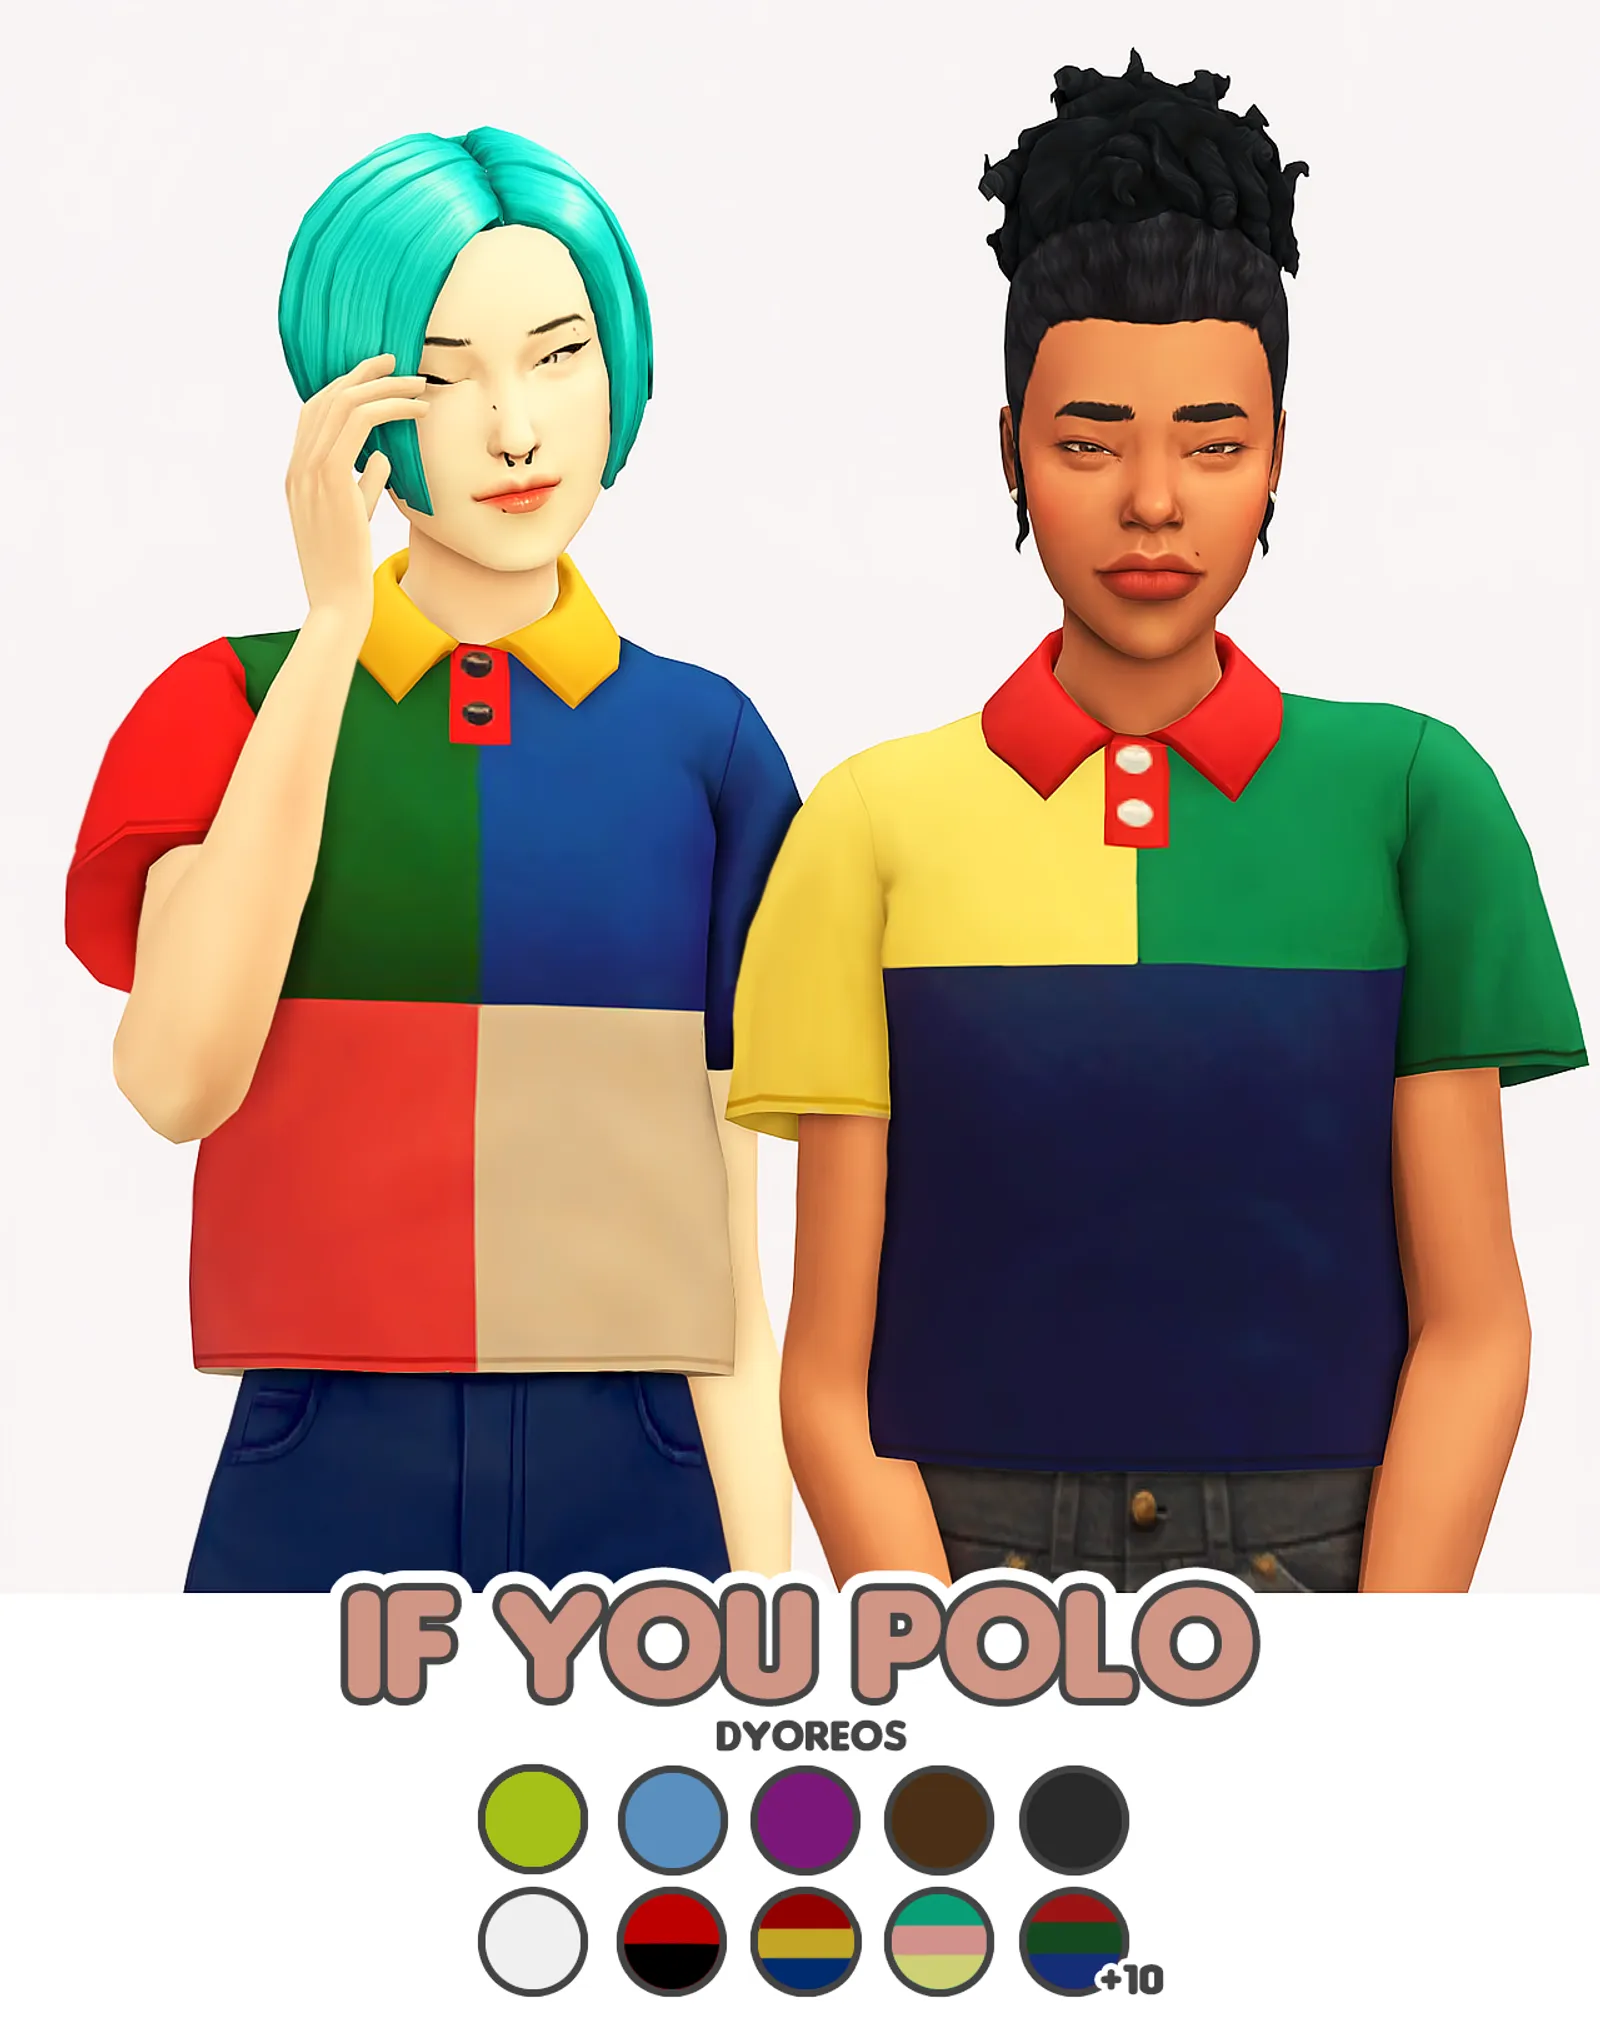 [Dyoreos] If You Polo